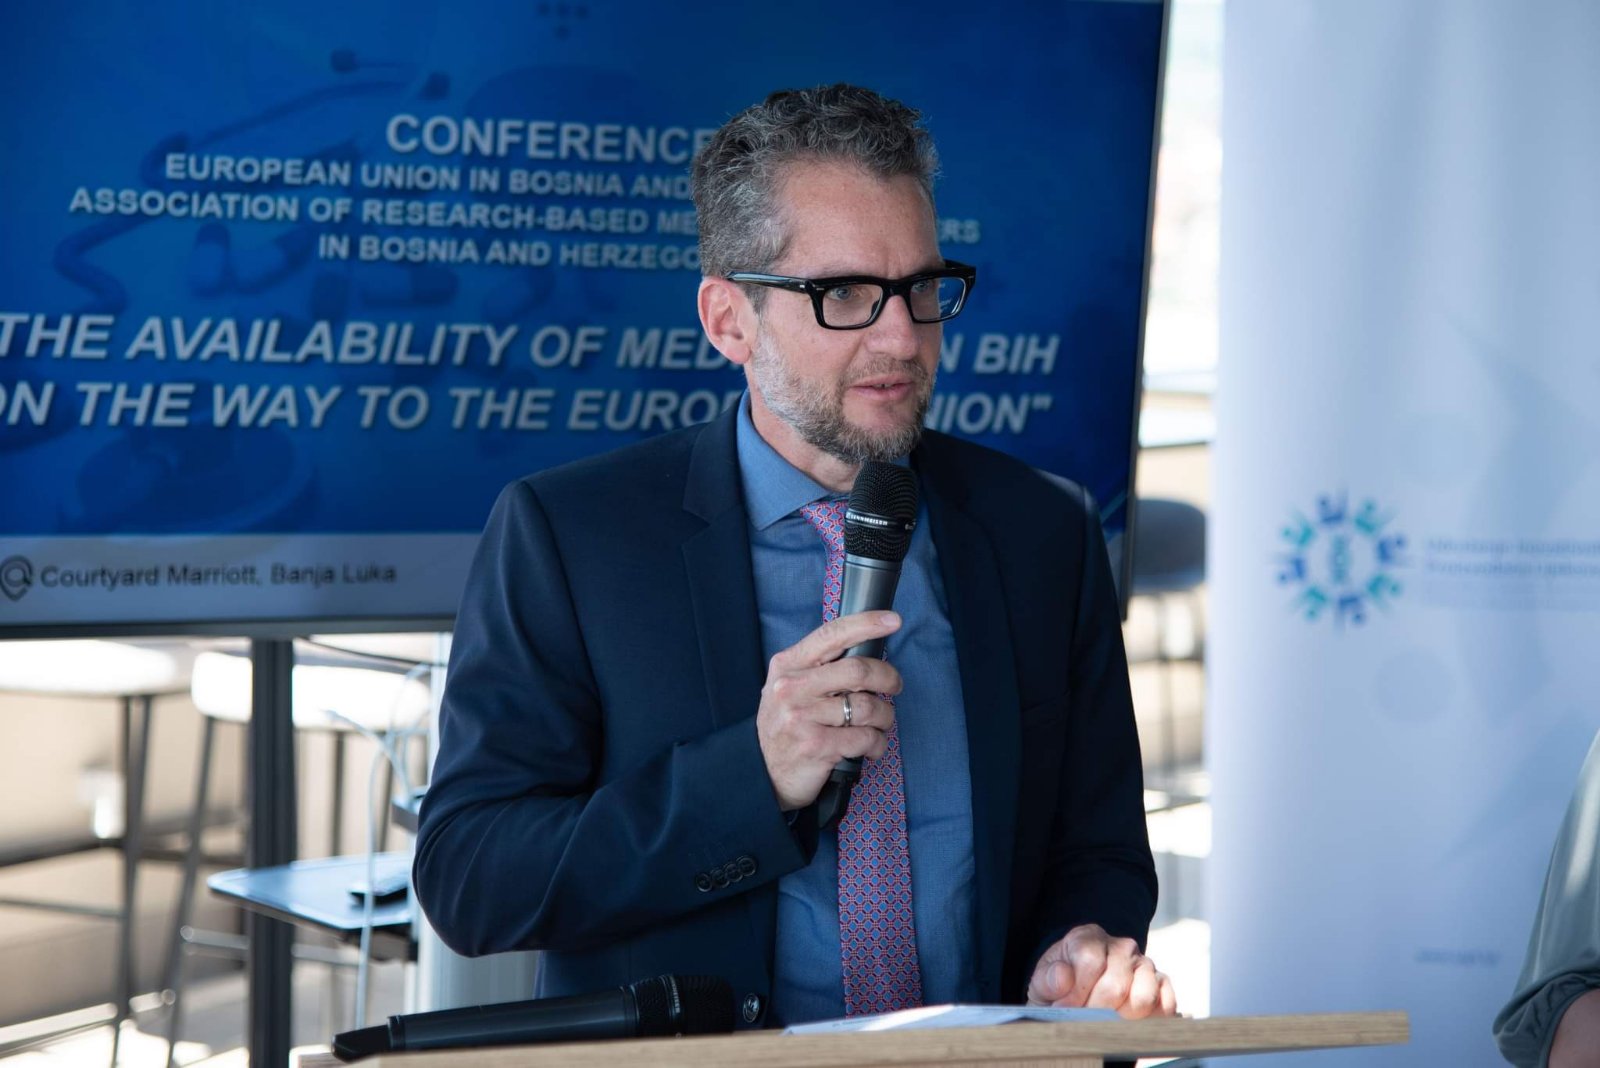 Konferencija “Dostupnost Lijekova U Bosni I Hercegovini Na Putu Ka Evropskoj Uniji”